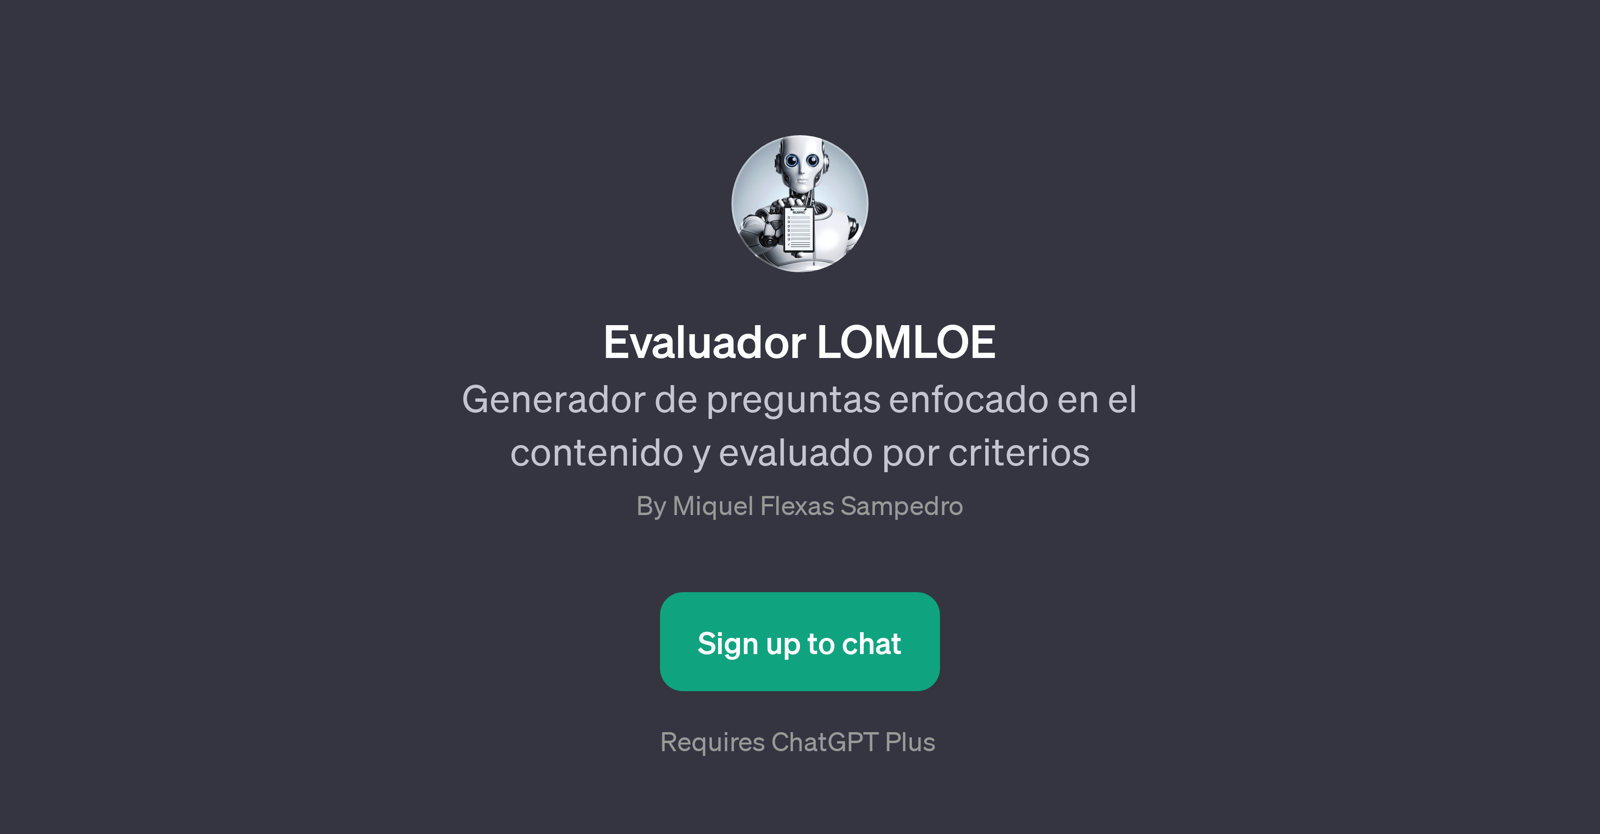 Evaluador LOMLOE website